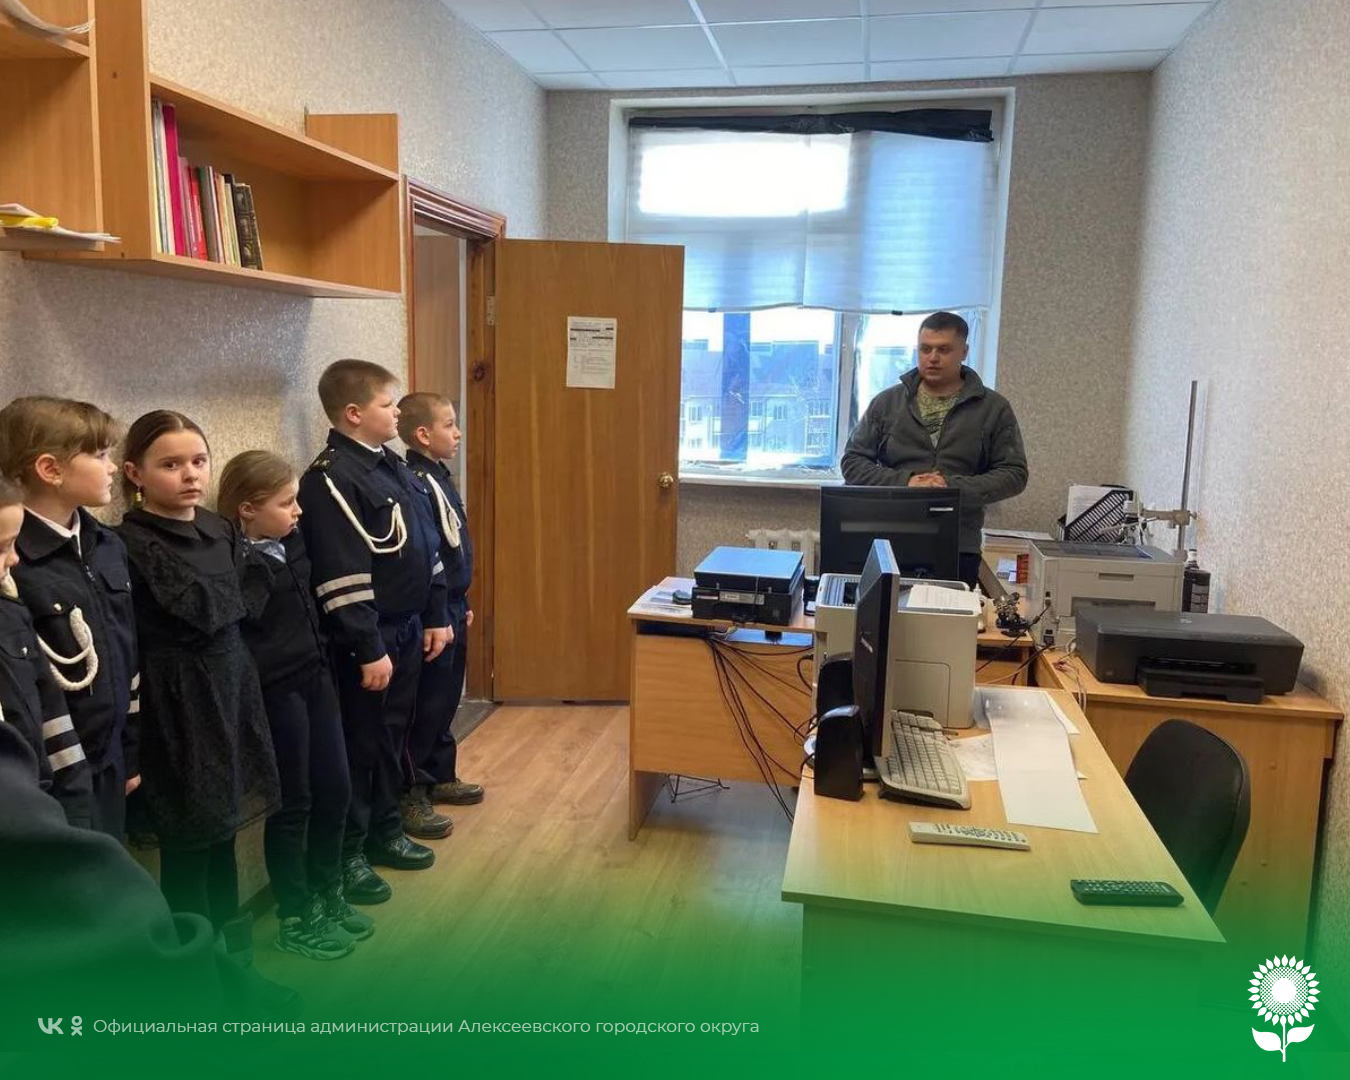 Учащиеся класса кадетов Госавтоинспекции Щербаковской школы побывали в гостях у сотрудников ОМВД России по Алексеевскому городскому округу.